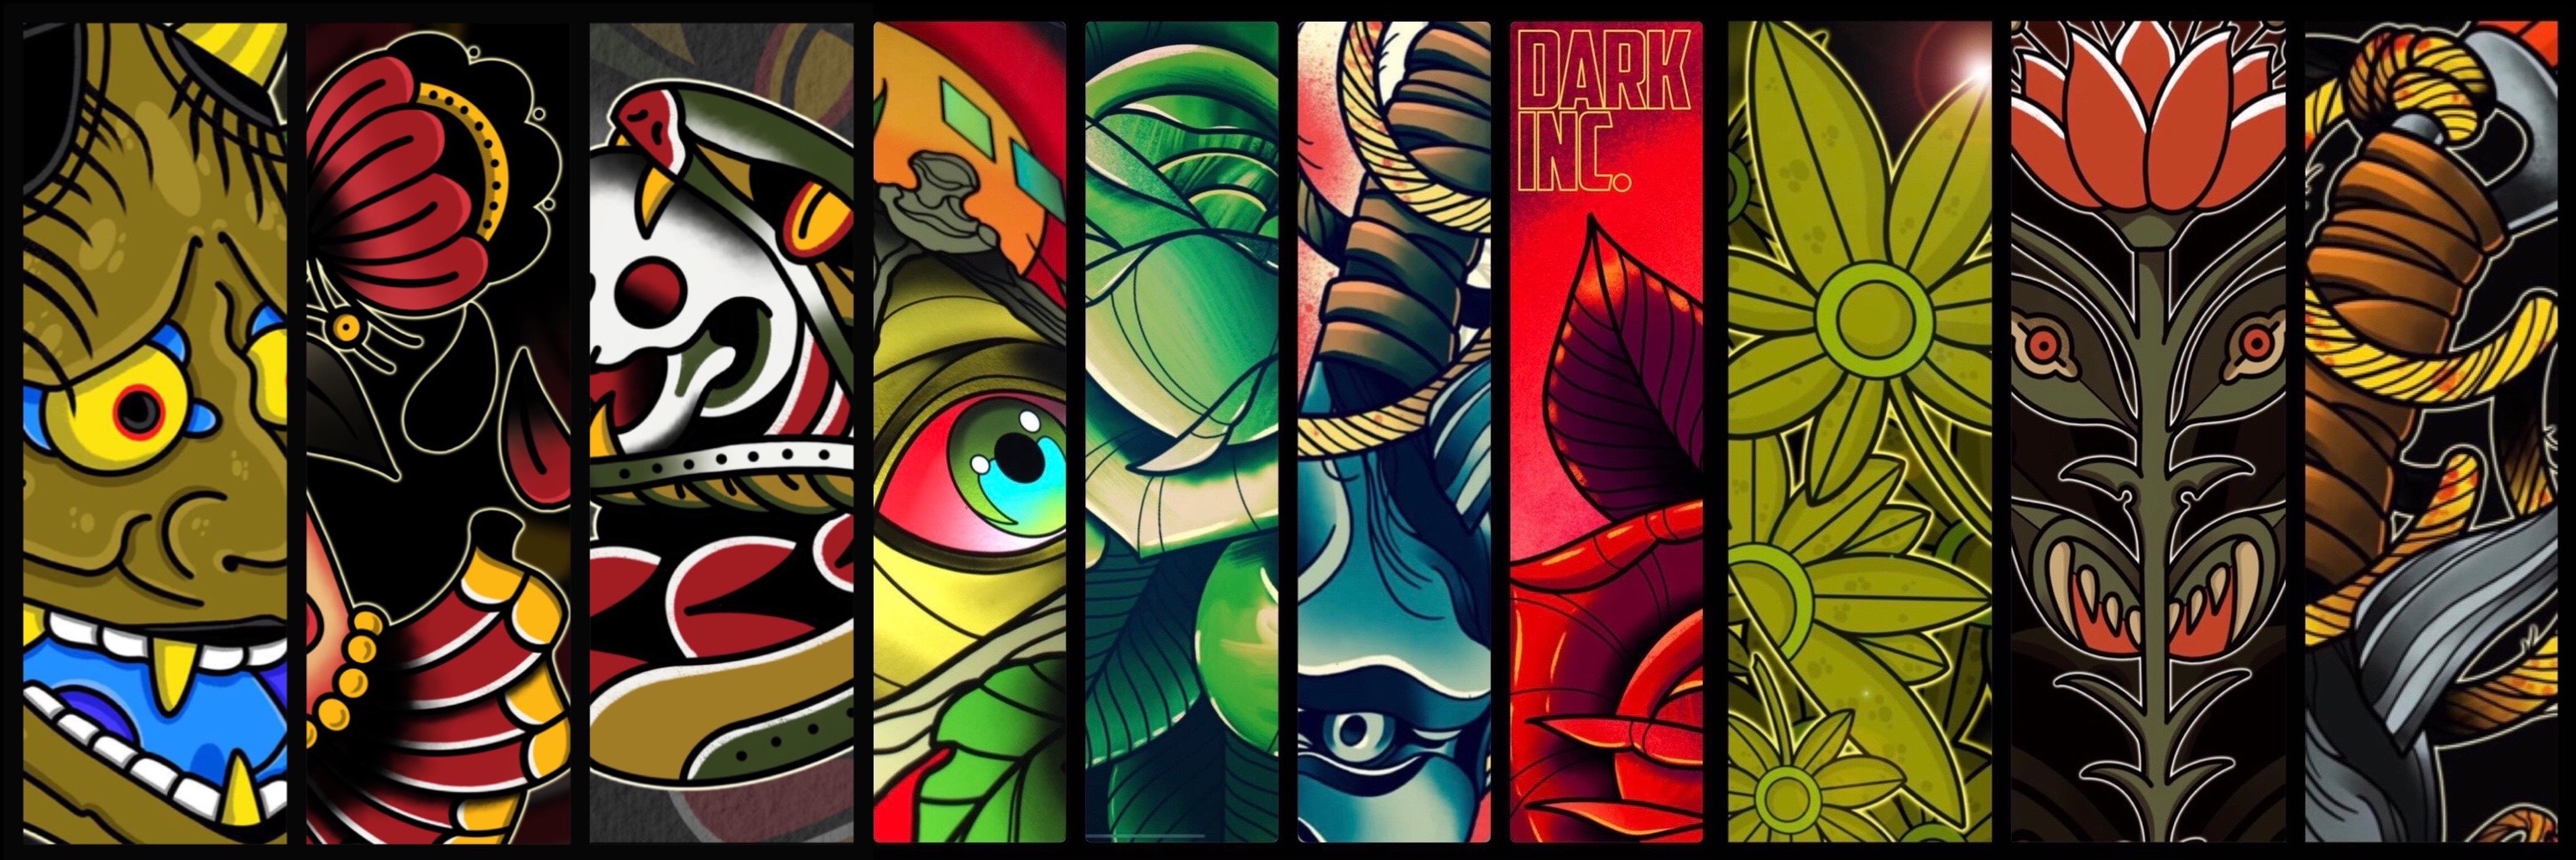 darkinc_D1git4l-Project banner